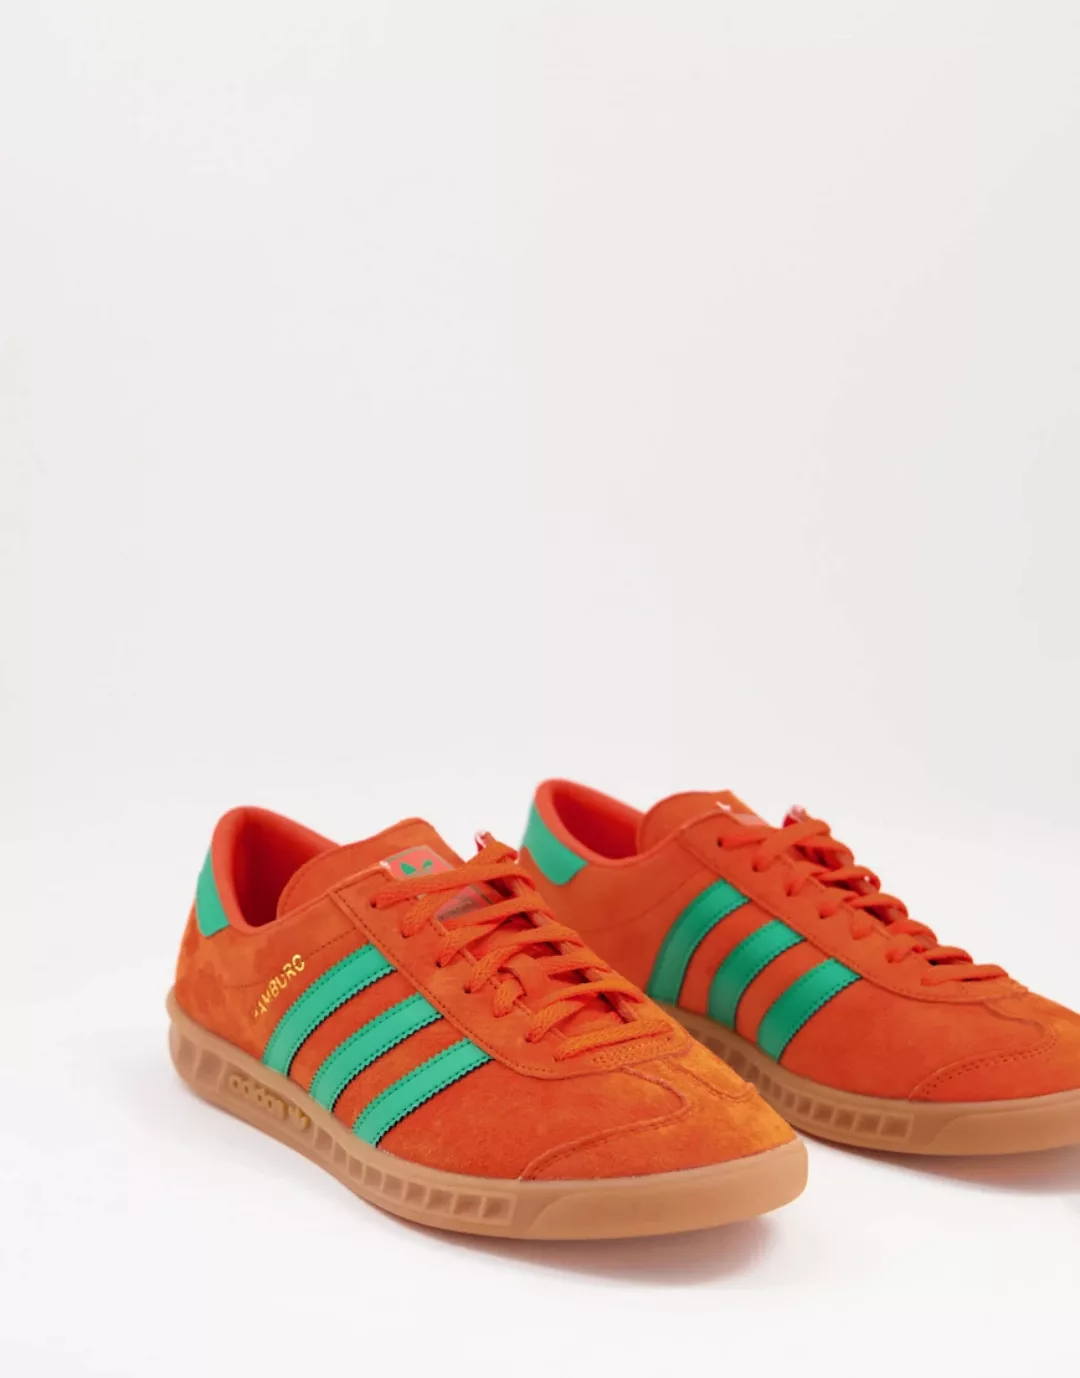 Adidas Originals Hamburg Turnschuhe EU 41 1/3 Team Orange / Team Green / Gu günstig online kaufen